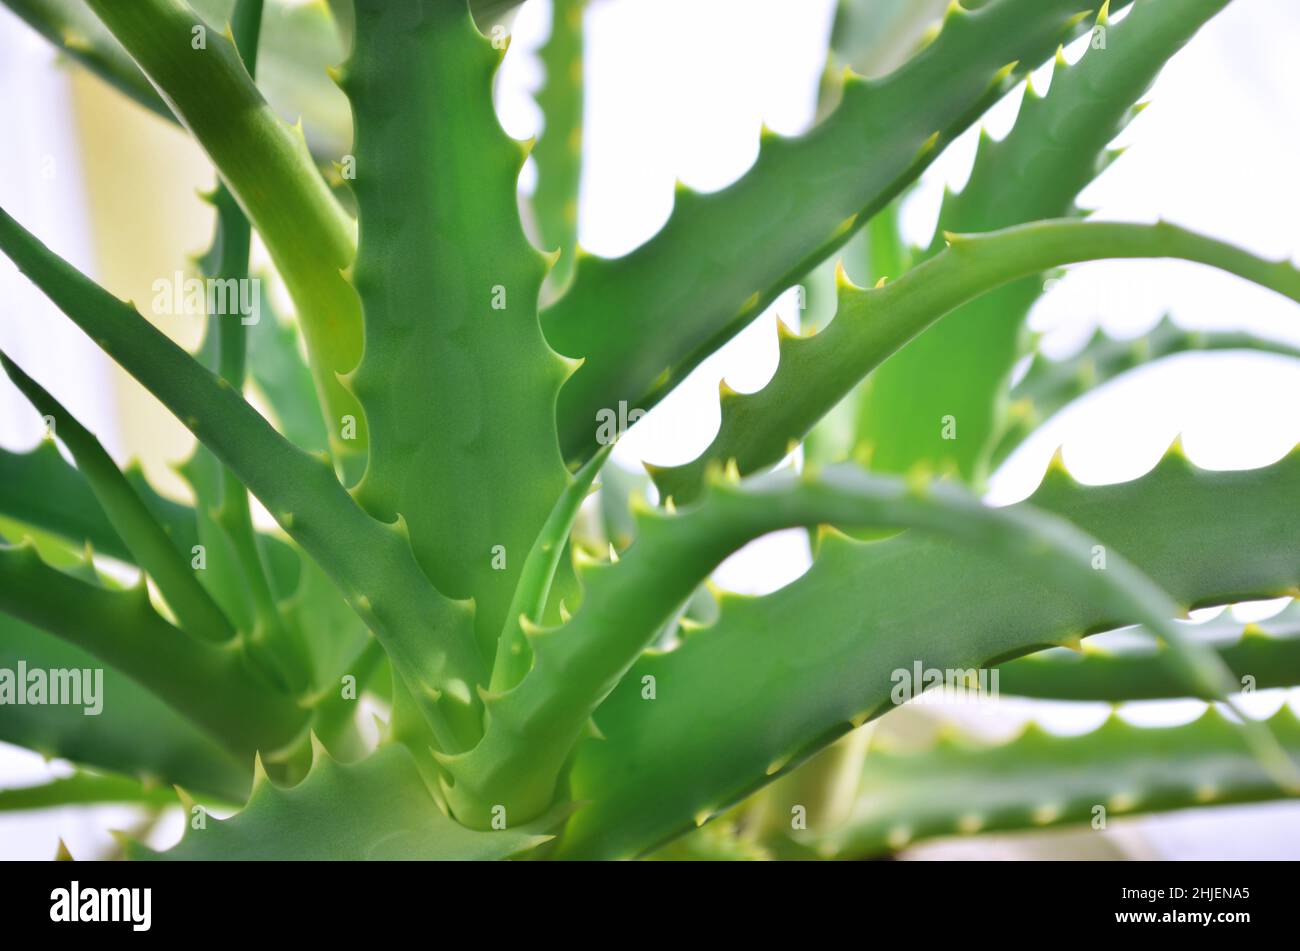 Grüne Blätter mit Spitzen von Aloe arborescens, bekannt als krantz Aloe oder Kandelaber Aloe. Nützliche Heilpflanze. Stockfoto